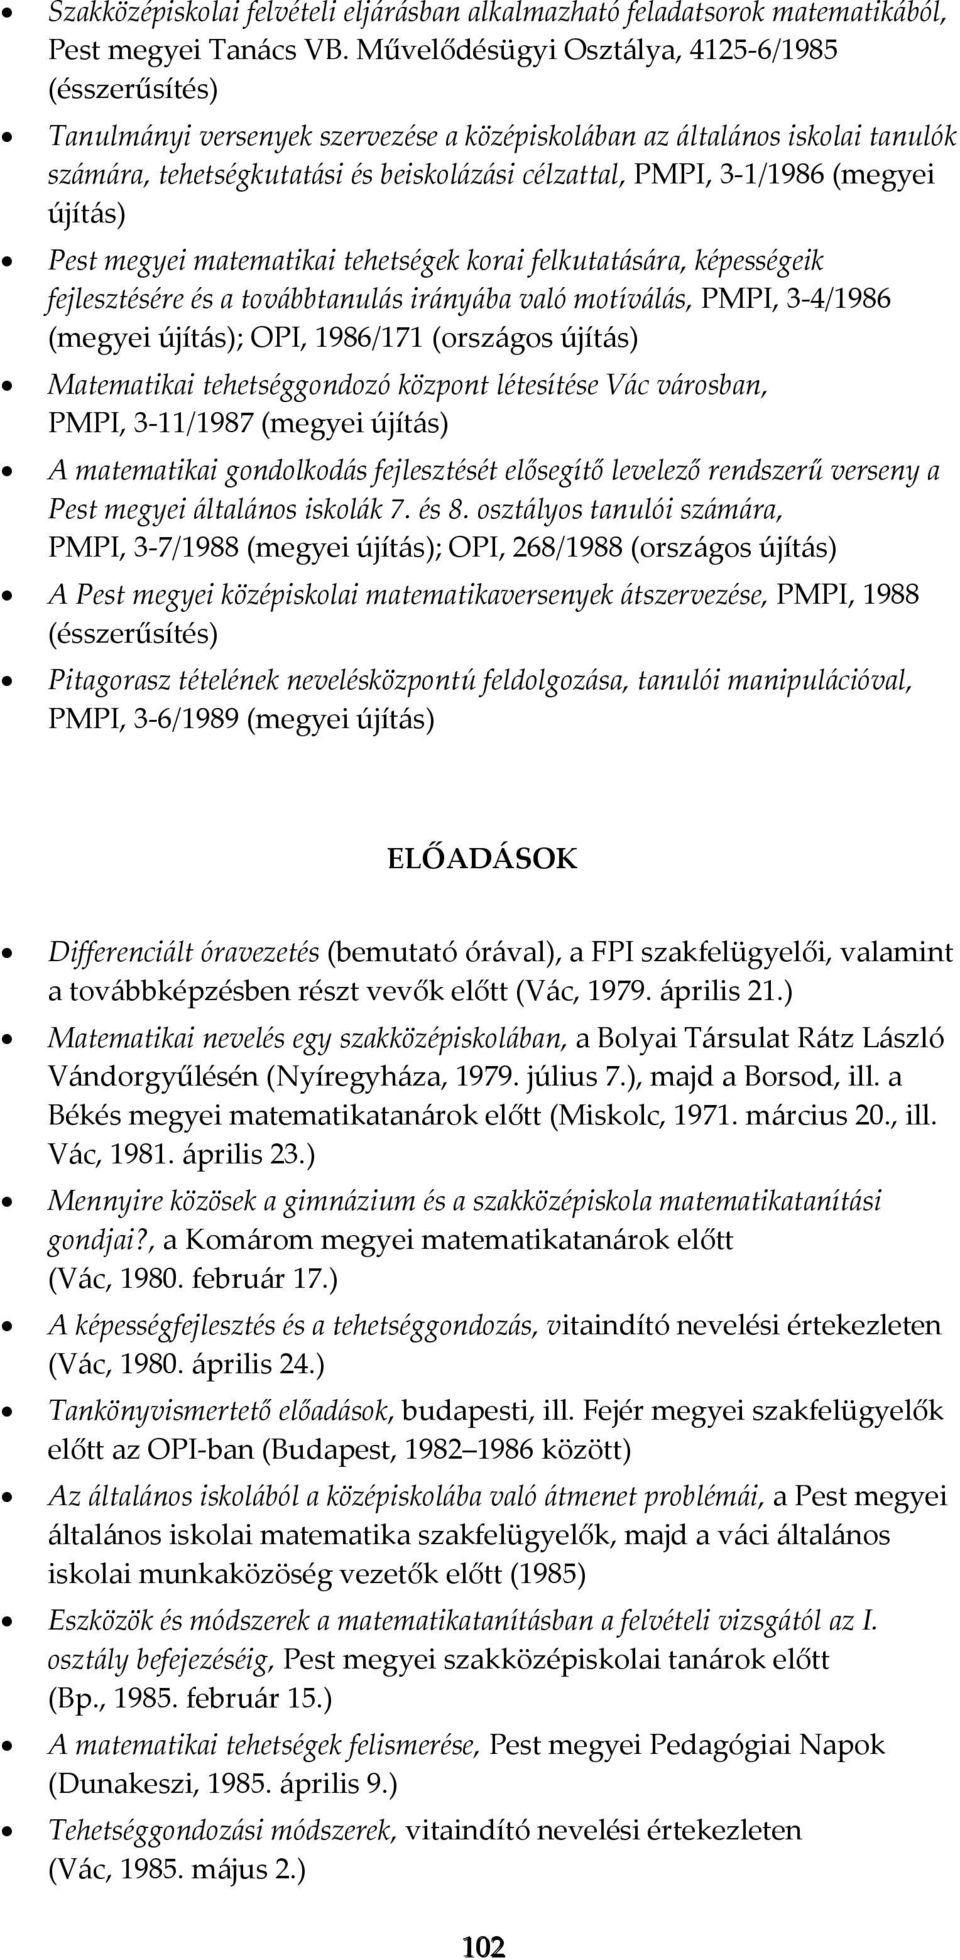 (megyei újítás) Pest megyei matematikai tehetségek korai felkutatására, képességeik fejlesztésére és a továbbtanulás irányába való motíválás, PMPI, 3-4/1986 (megyei újítás); OPI, 1986/171 (országos